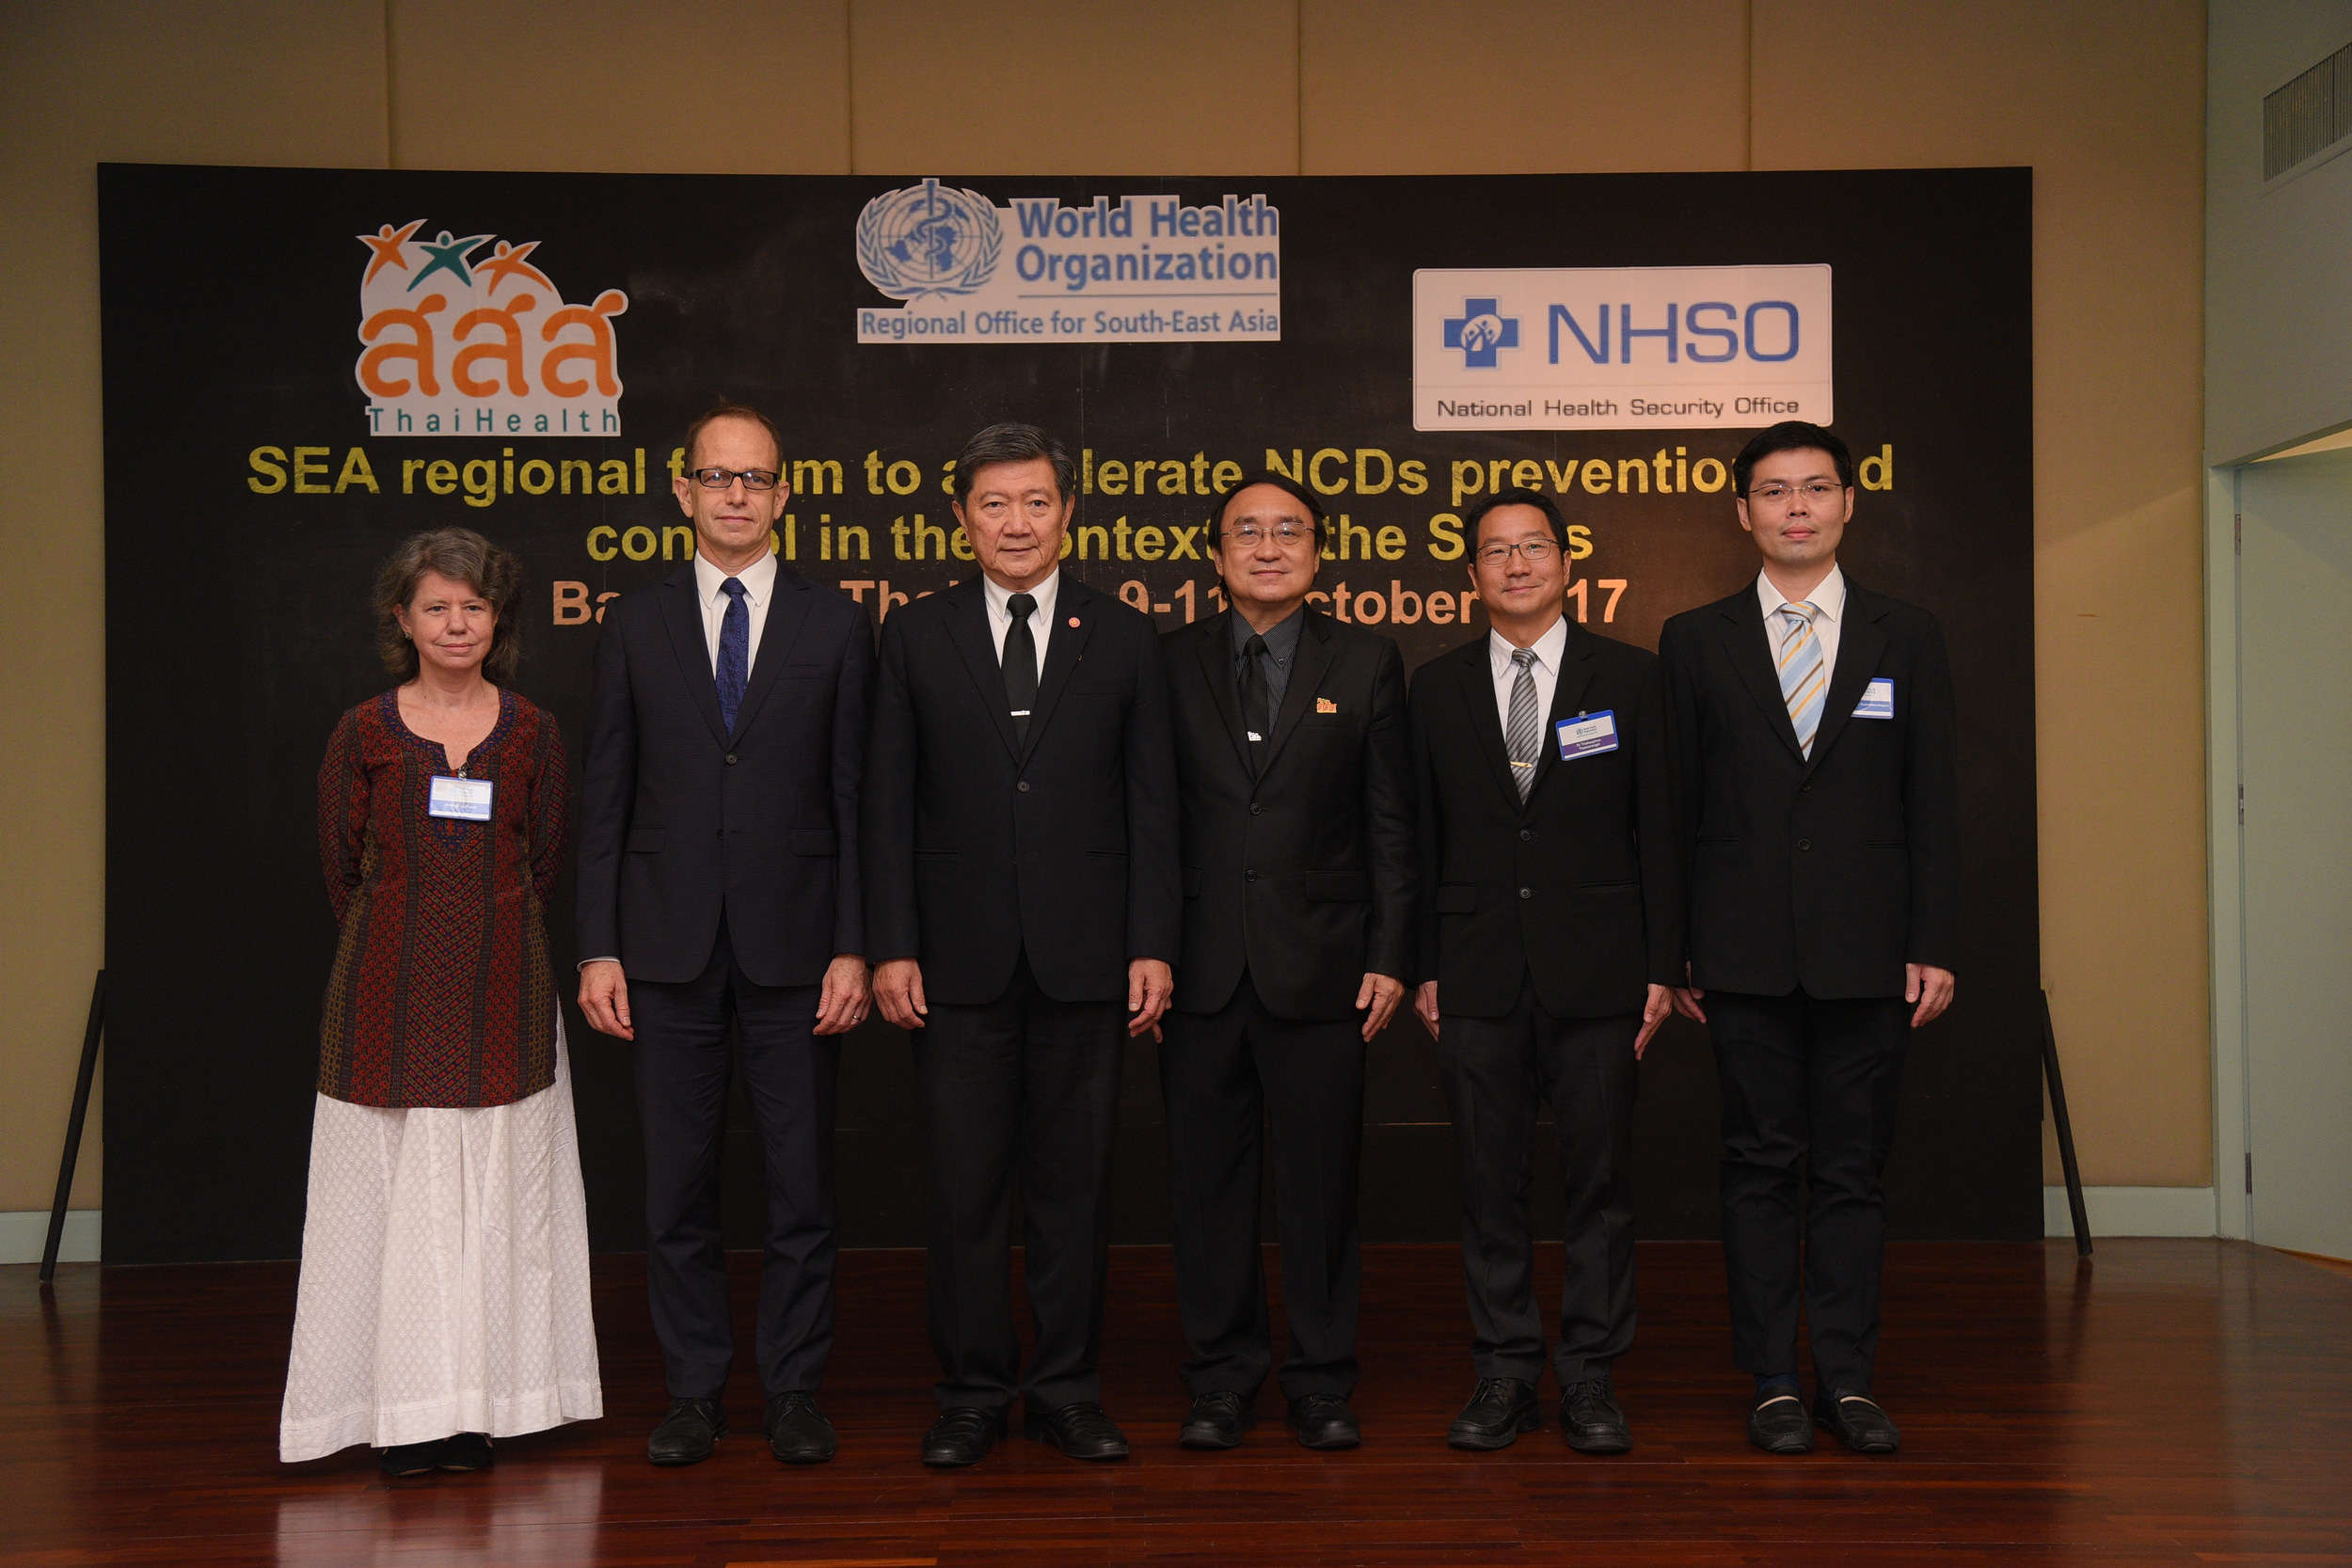 11 ประเทศผนึกกำลังควบคุมโรคไม่ติดต่อ (NCDs) thaihealth